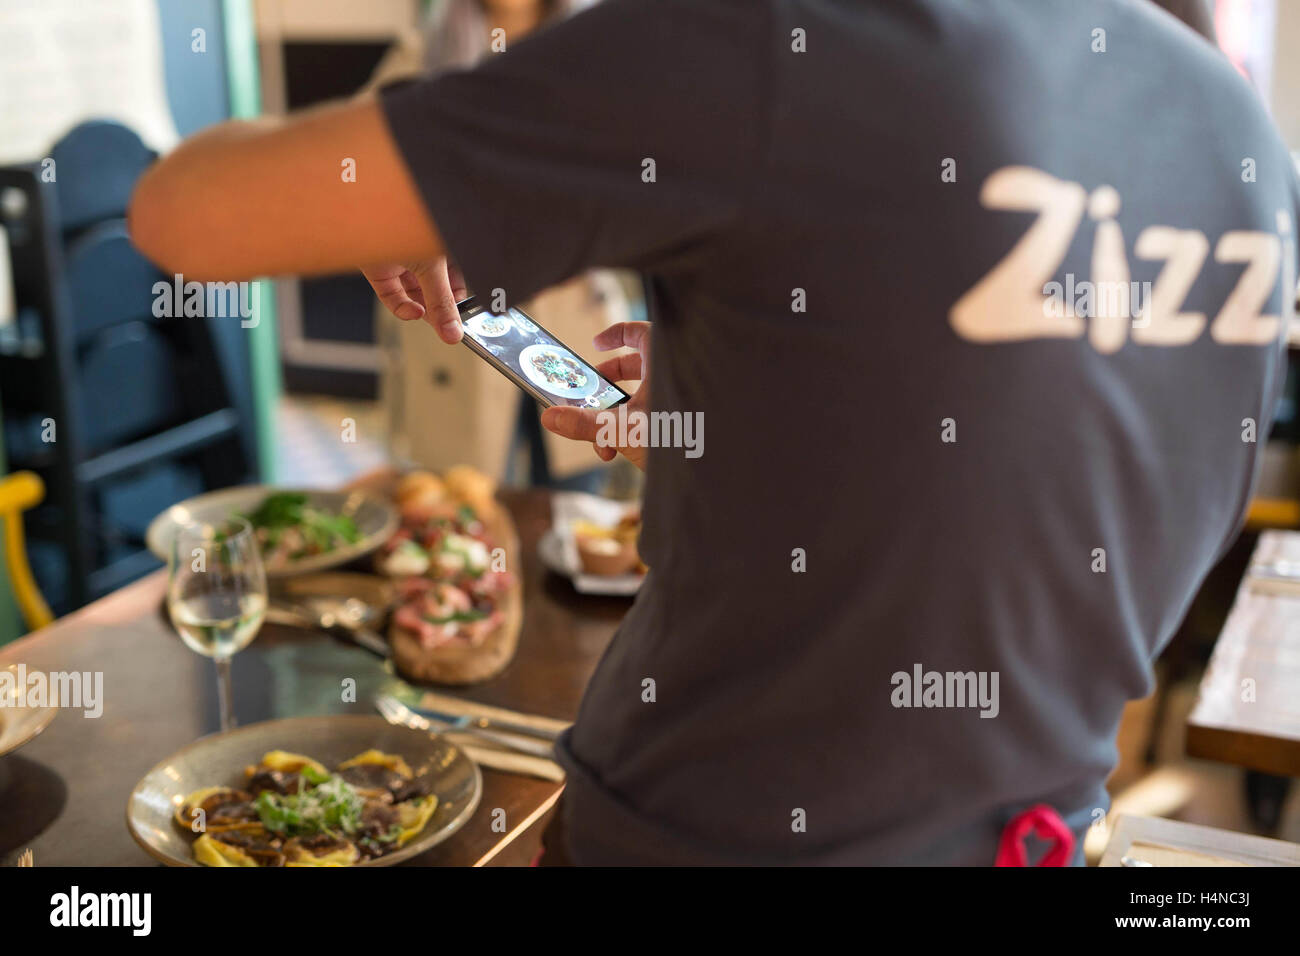 EDITORIAL N'utilisez que les médias sociaux influenceur Leanne Lim Walker, 27 trains, le personnel de restaurant Zizzi in London's Covent Garden, comme la chaîne italienne de la salle à manger l'embrasse activement tendance de photographier vos repas à partager sur Instagram. Banque D'Images